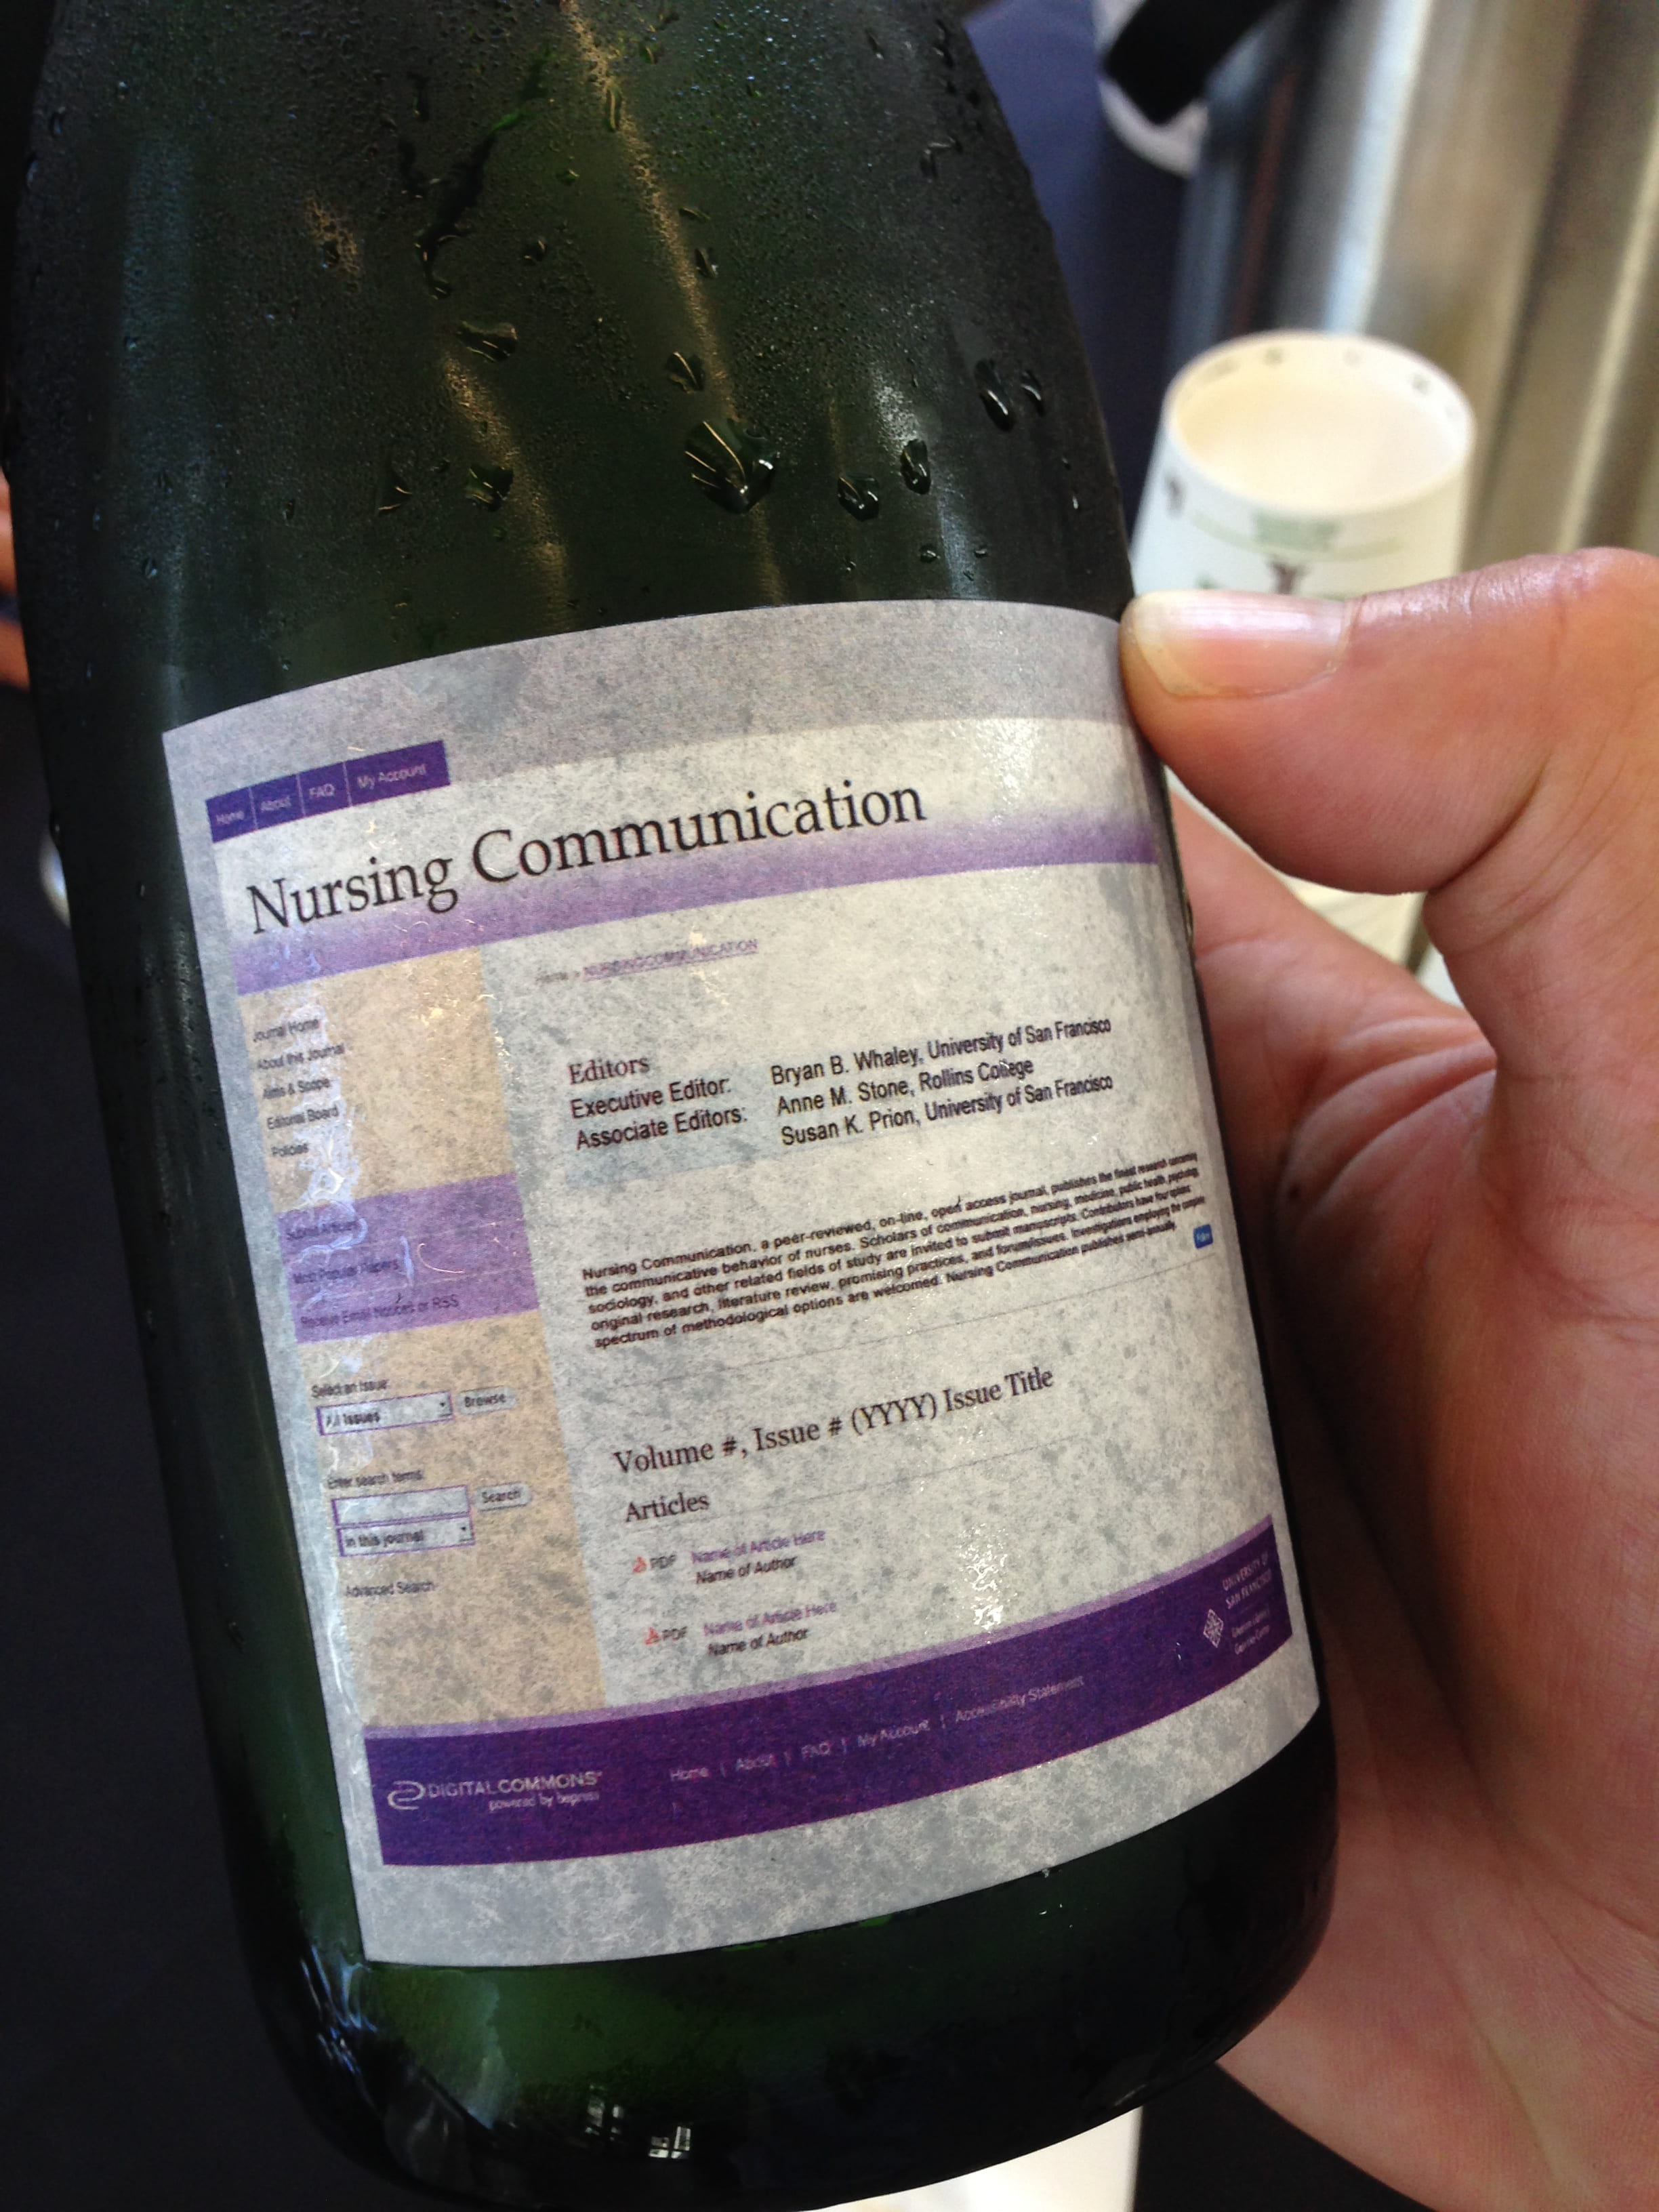 Label on Champagne bottle